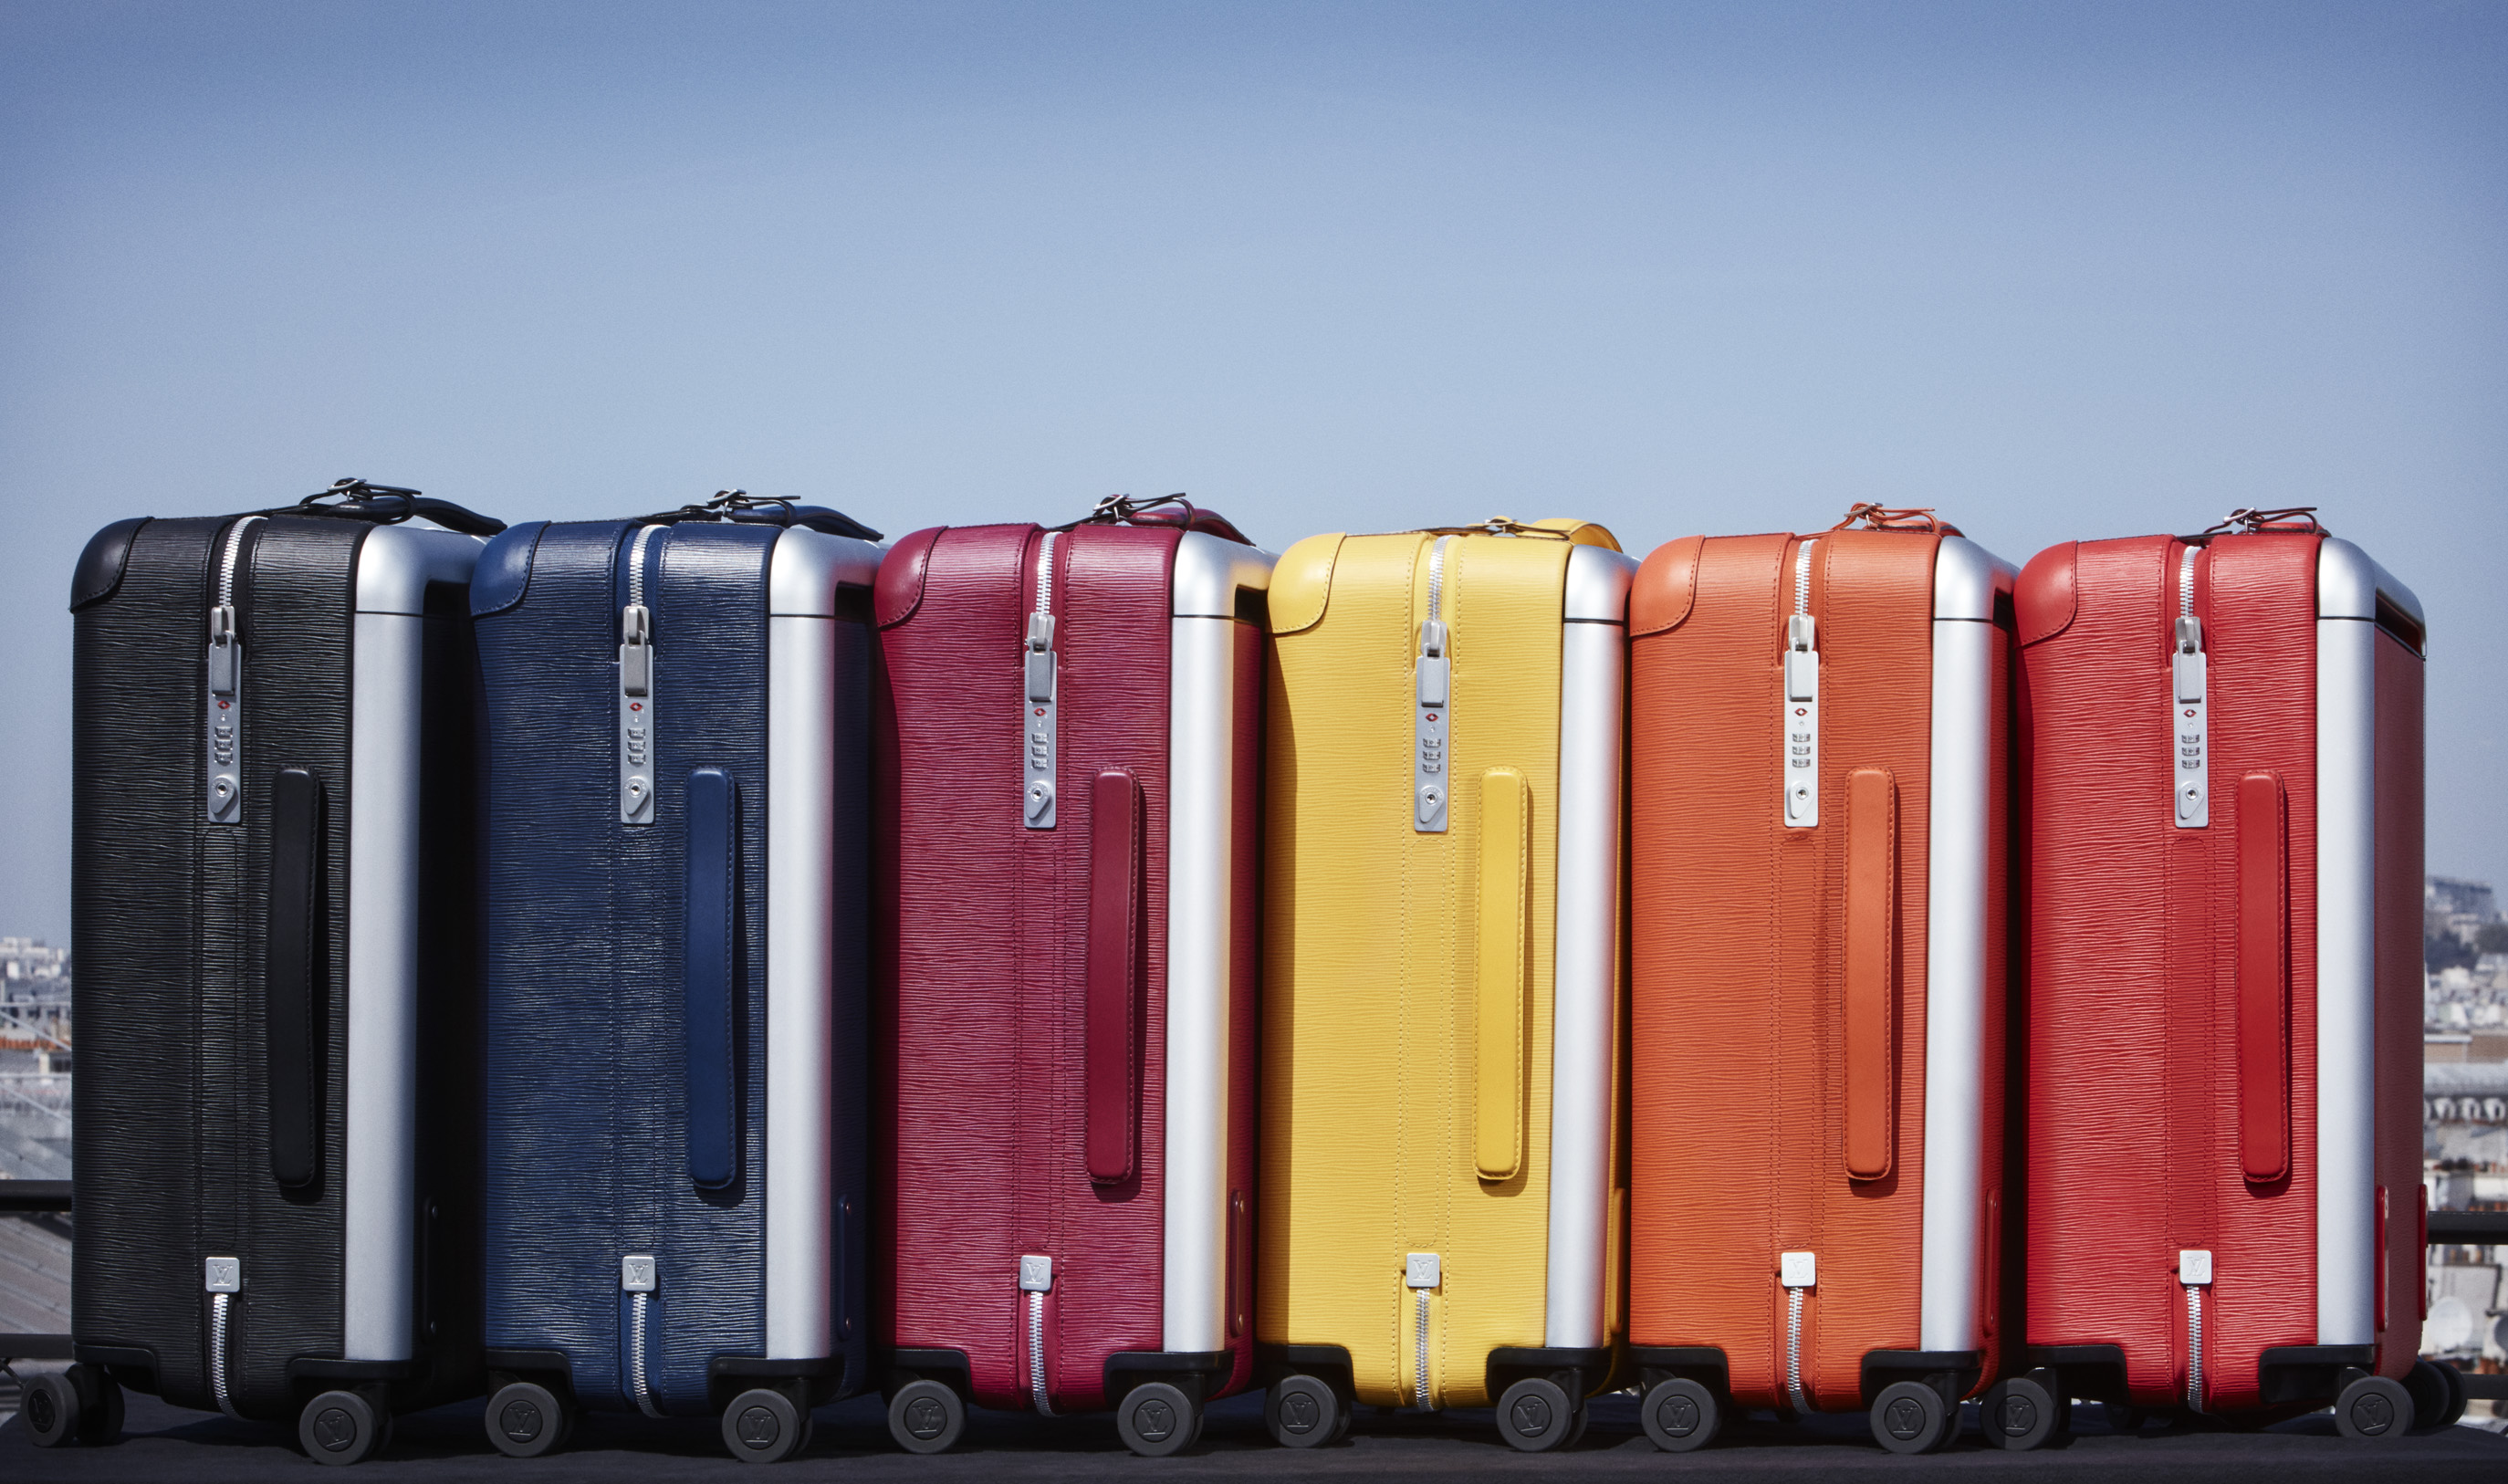 Maleta Horizon en seis de los siete colores disponibles. Foto: cortesía Louis Vuitton.